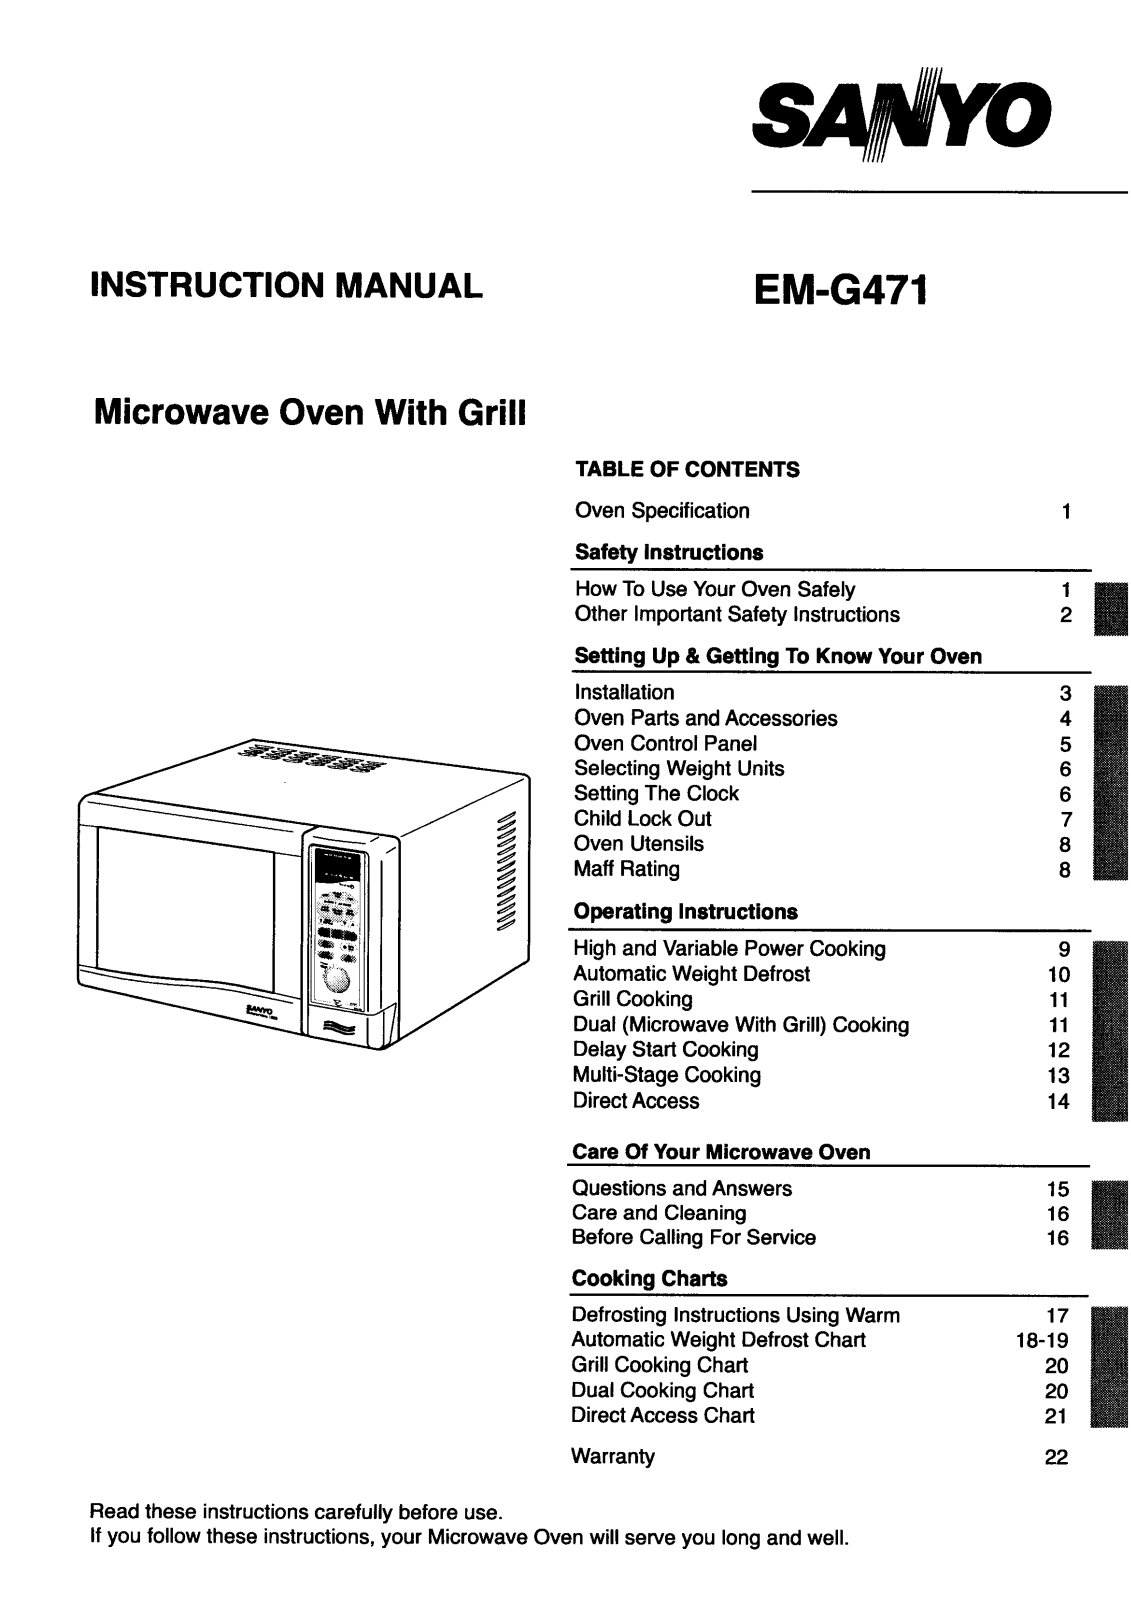 Sanyo EM-G471 Instruction Manual